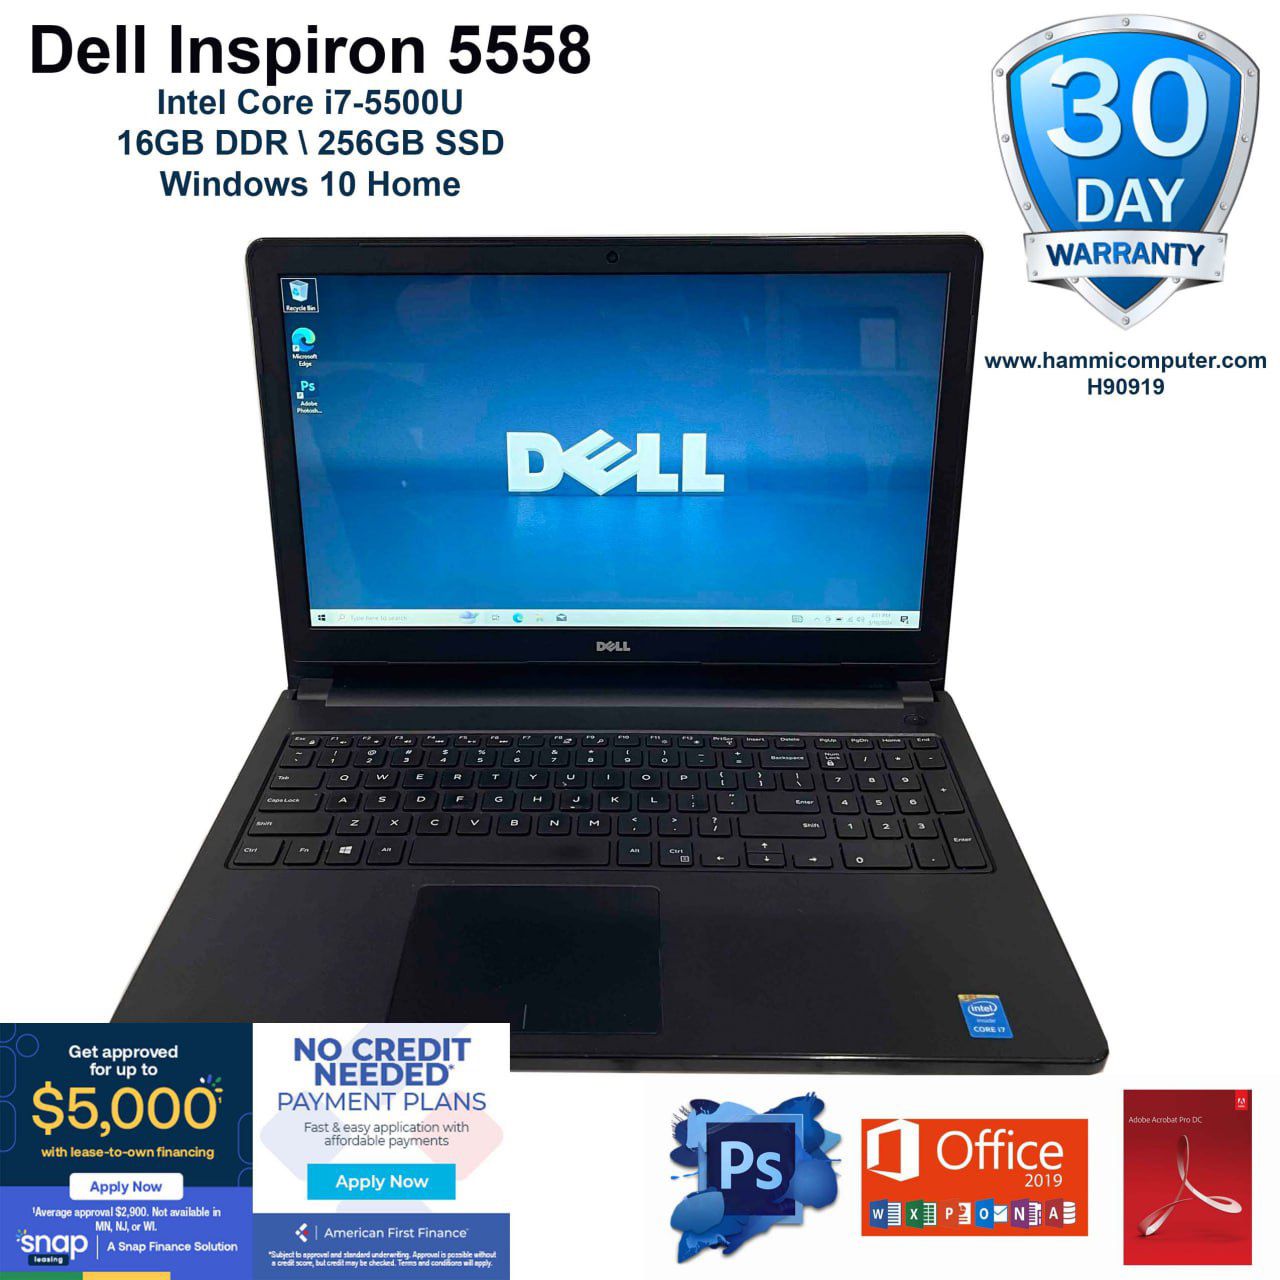 Dell Inspiron 5558, Intel Core i7, 16GB, 256GB SSD "H90919"